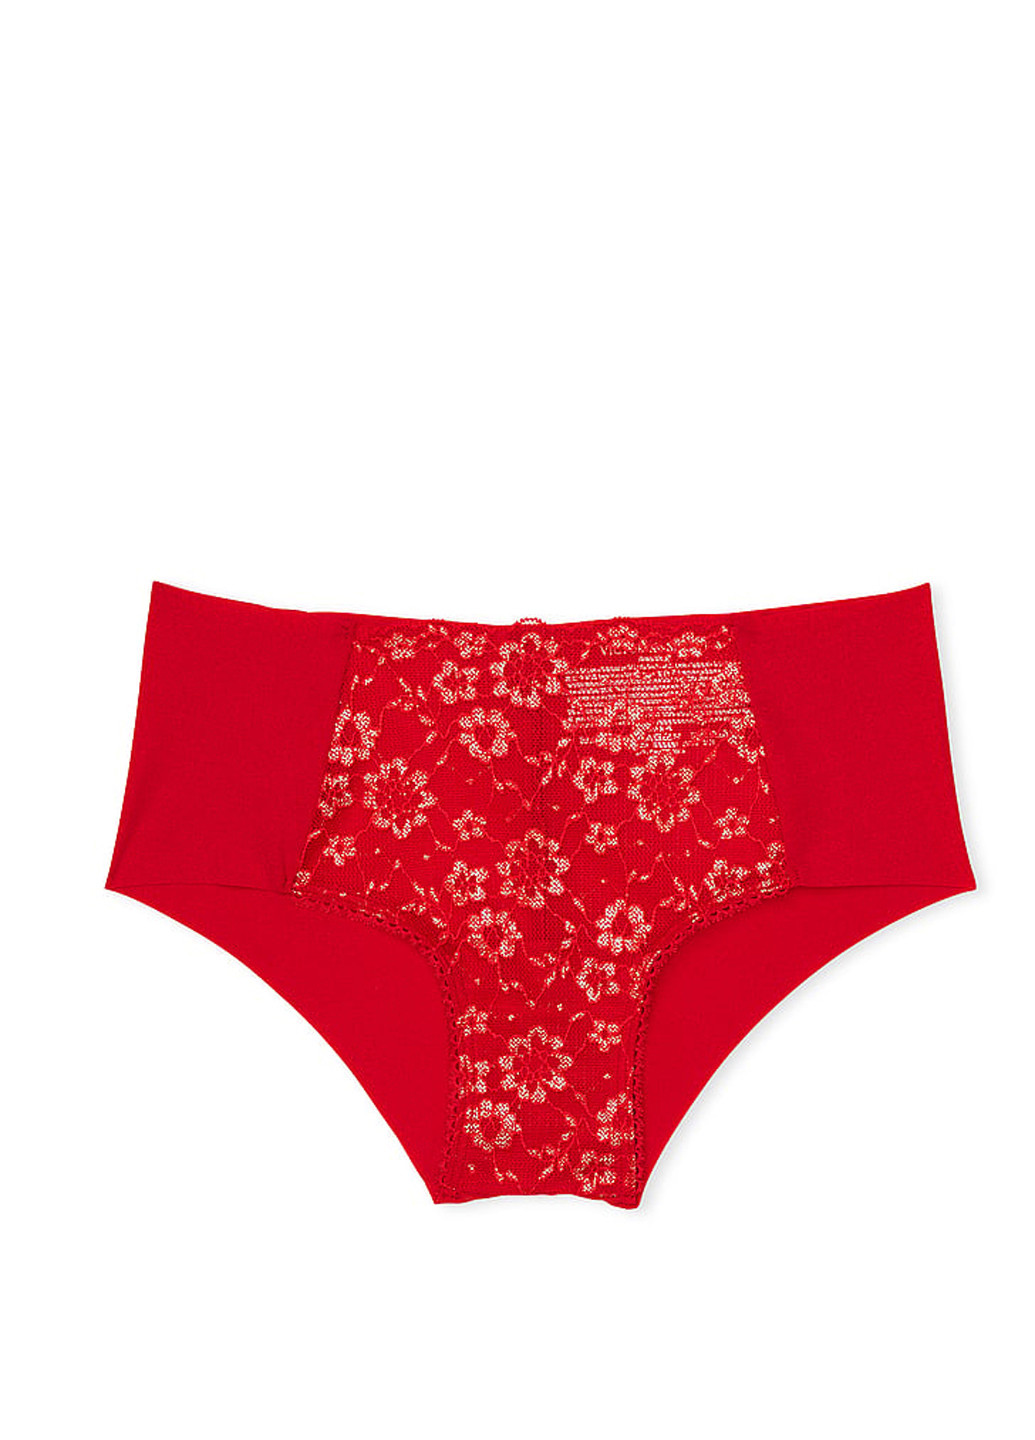 Червоний демісезонний комплект білизни (бюстгальтер, трусики) Victoria's Secret